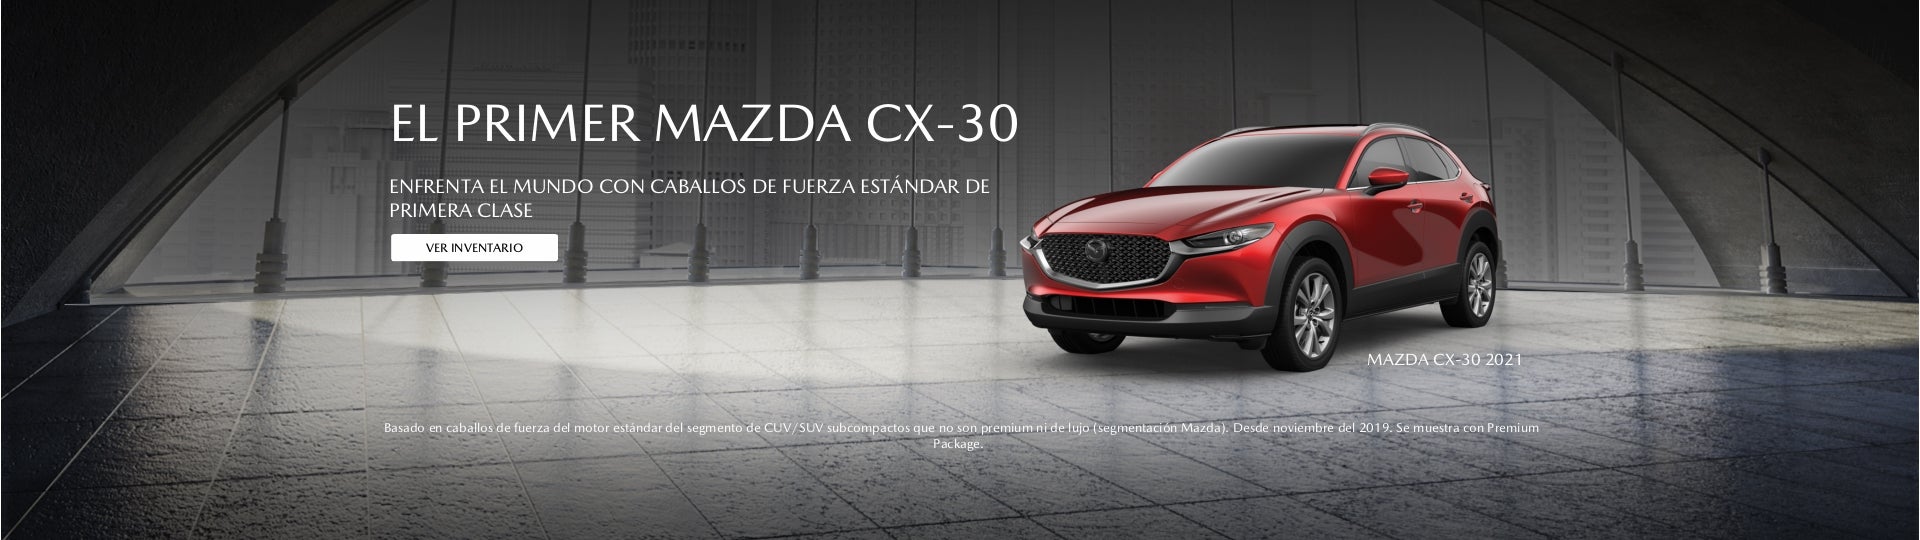 El Primer Mazda CX30